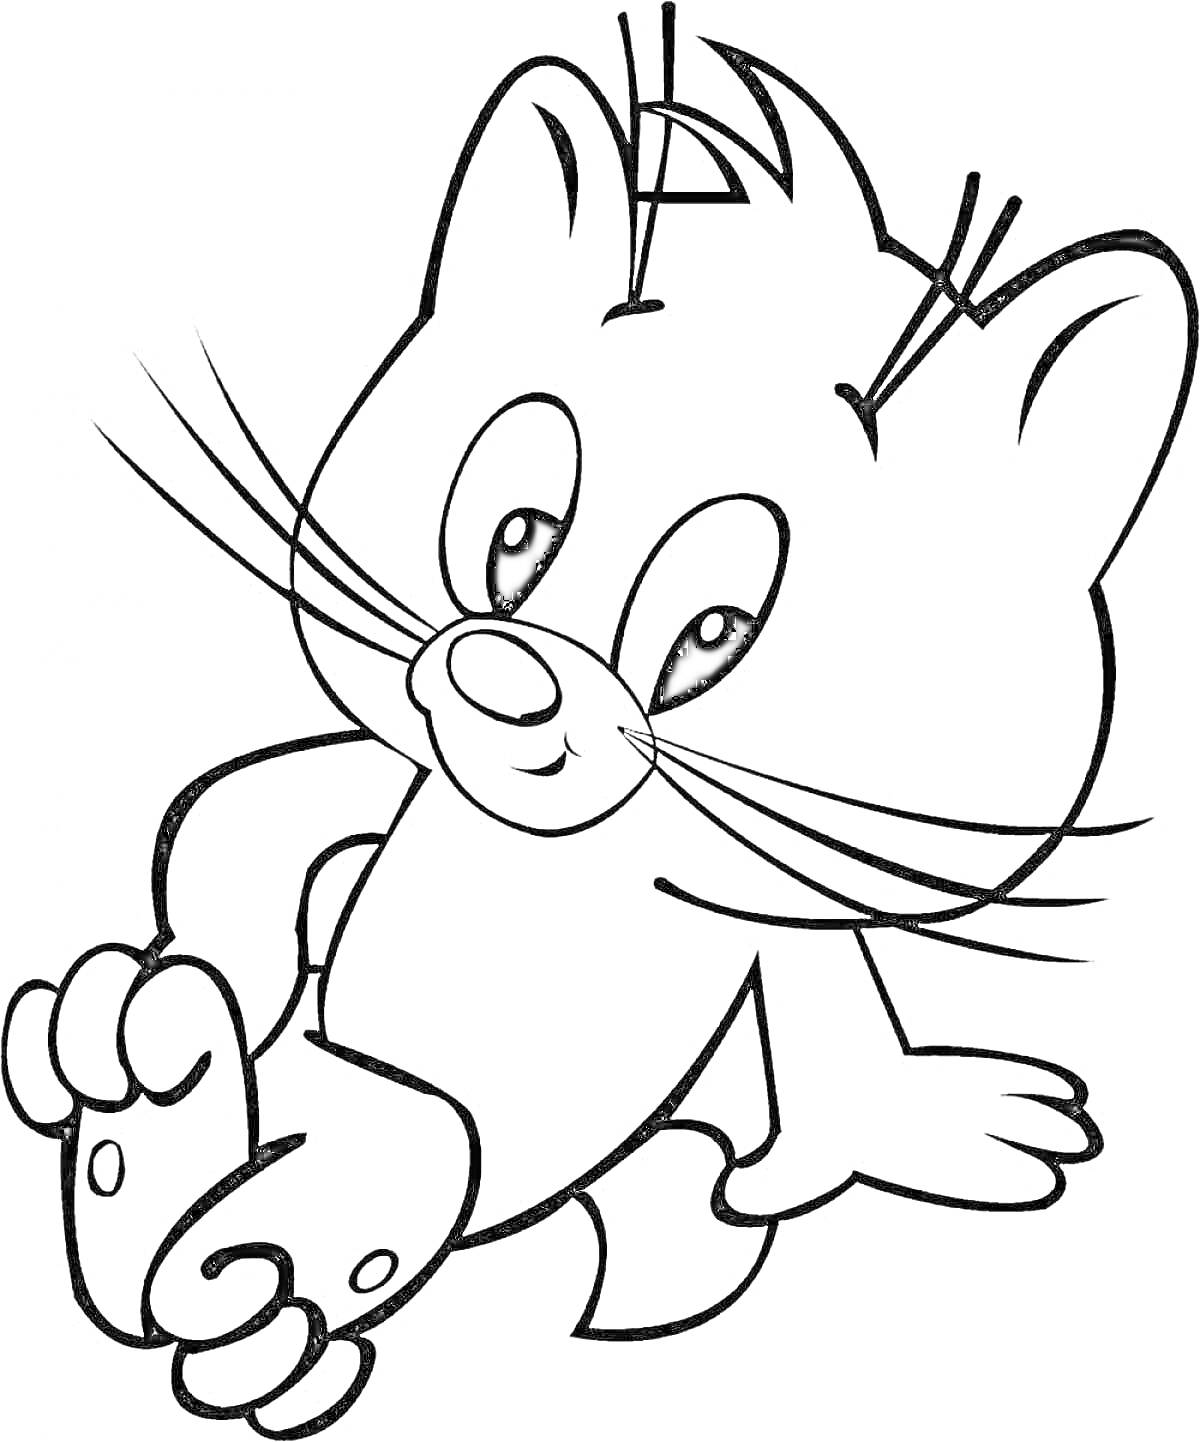 Раскраска Сидящий котенок с поднятой лапкой